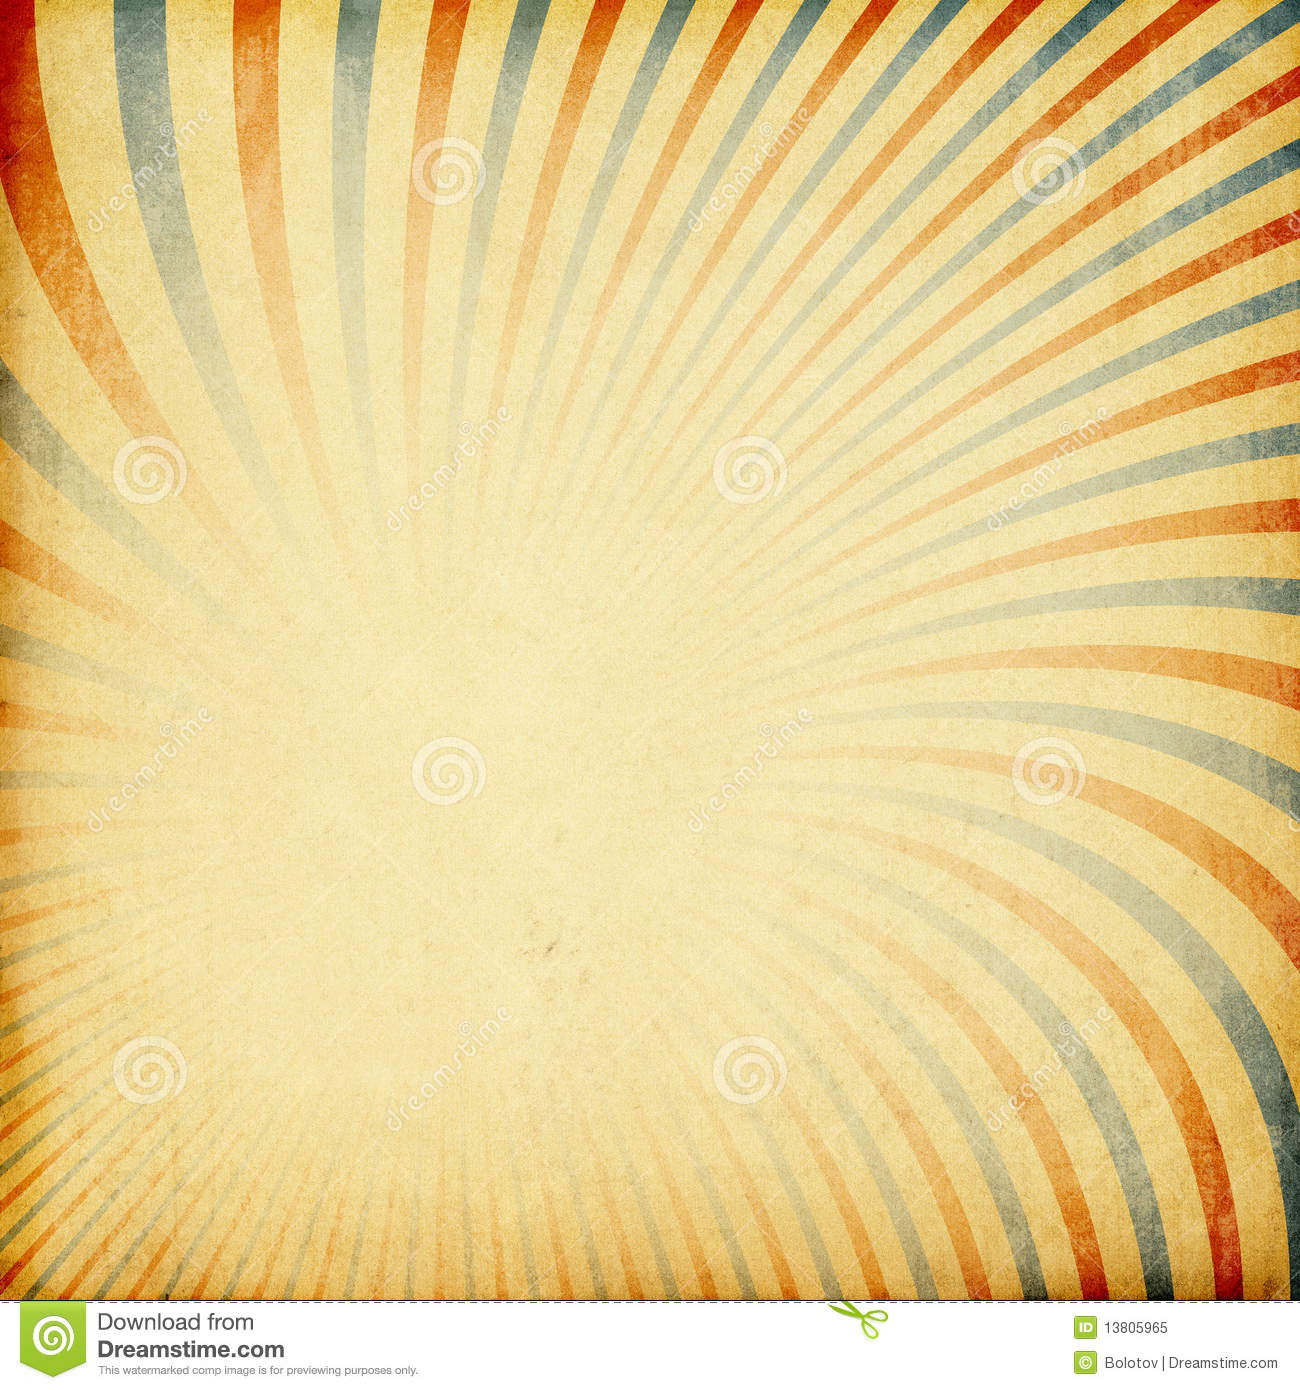 Retro Sunburst Background  Royalty Free Stock Photo   Image  13805965